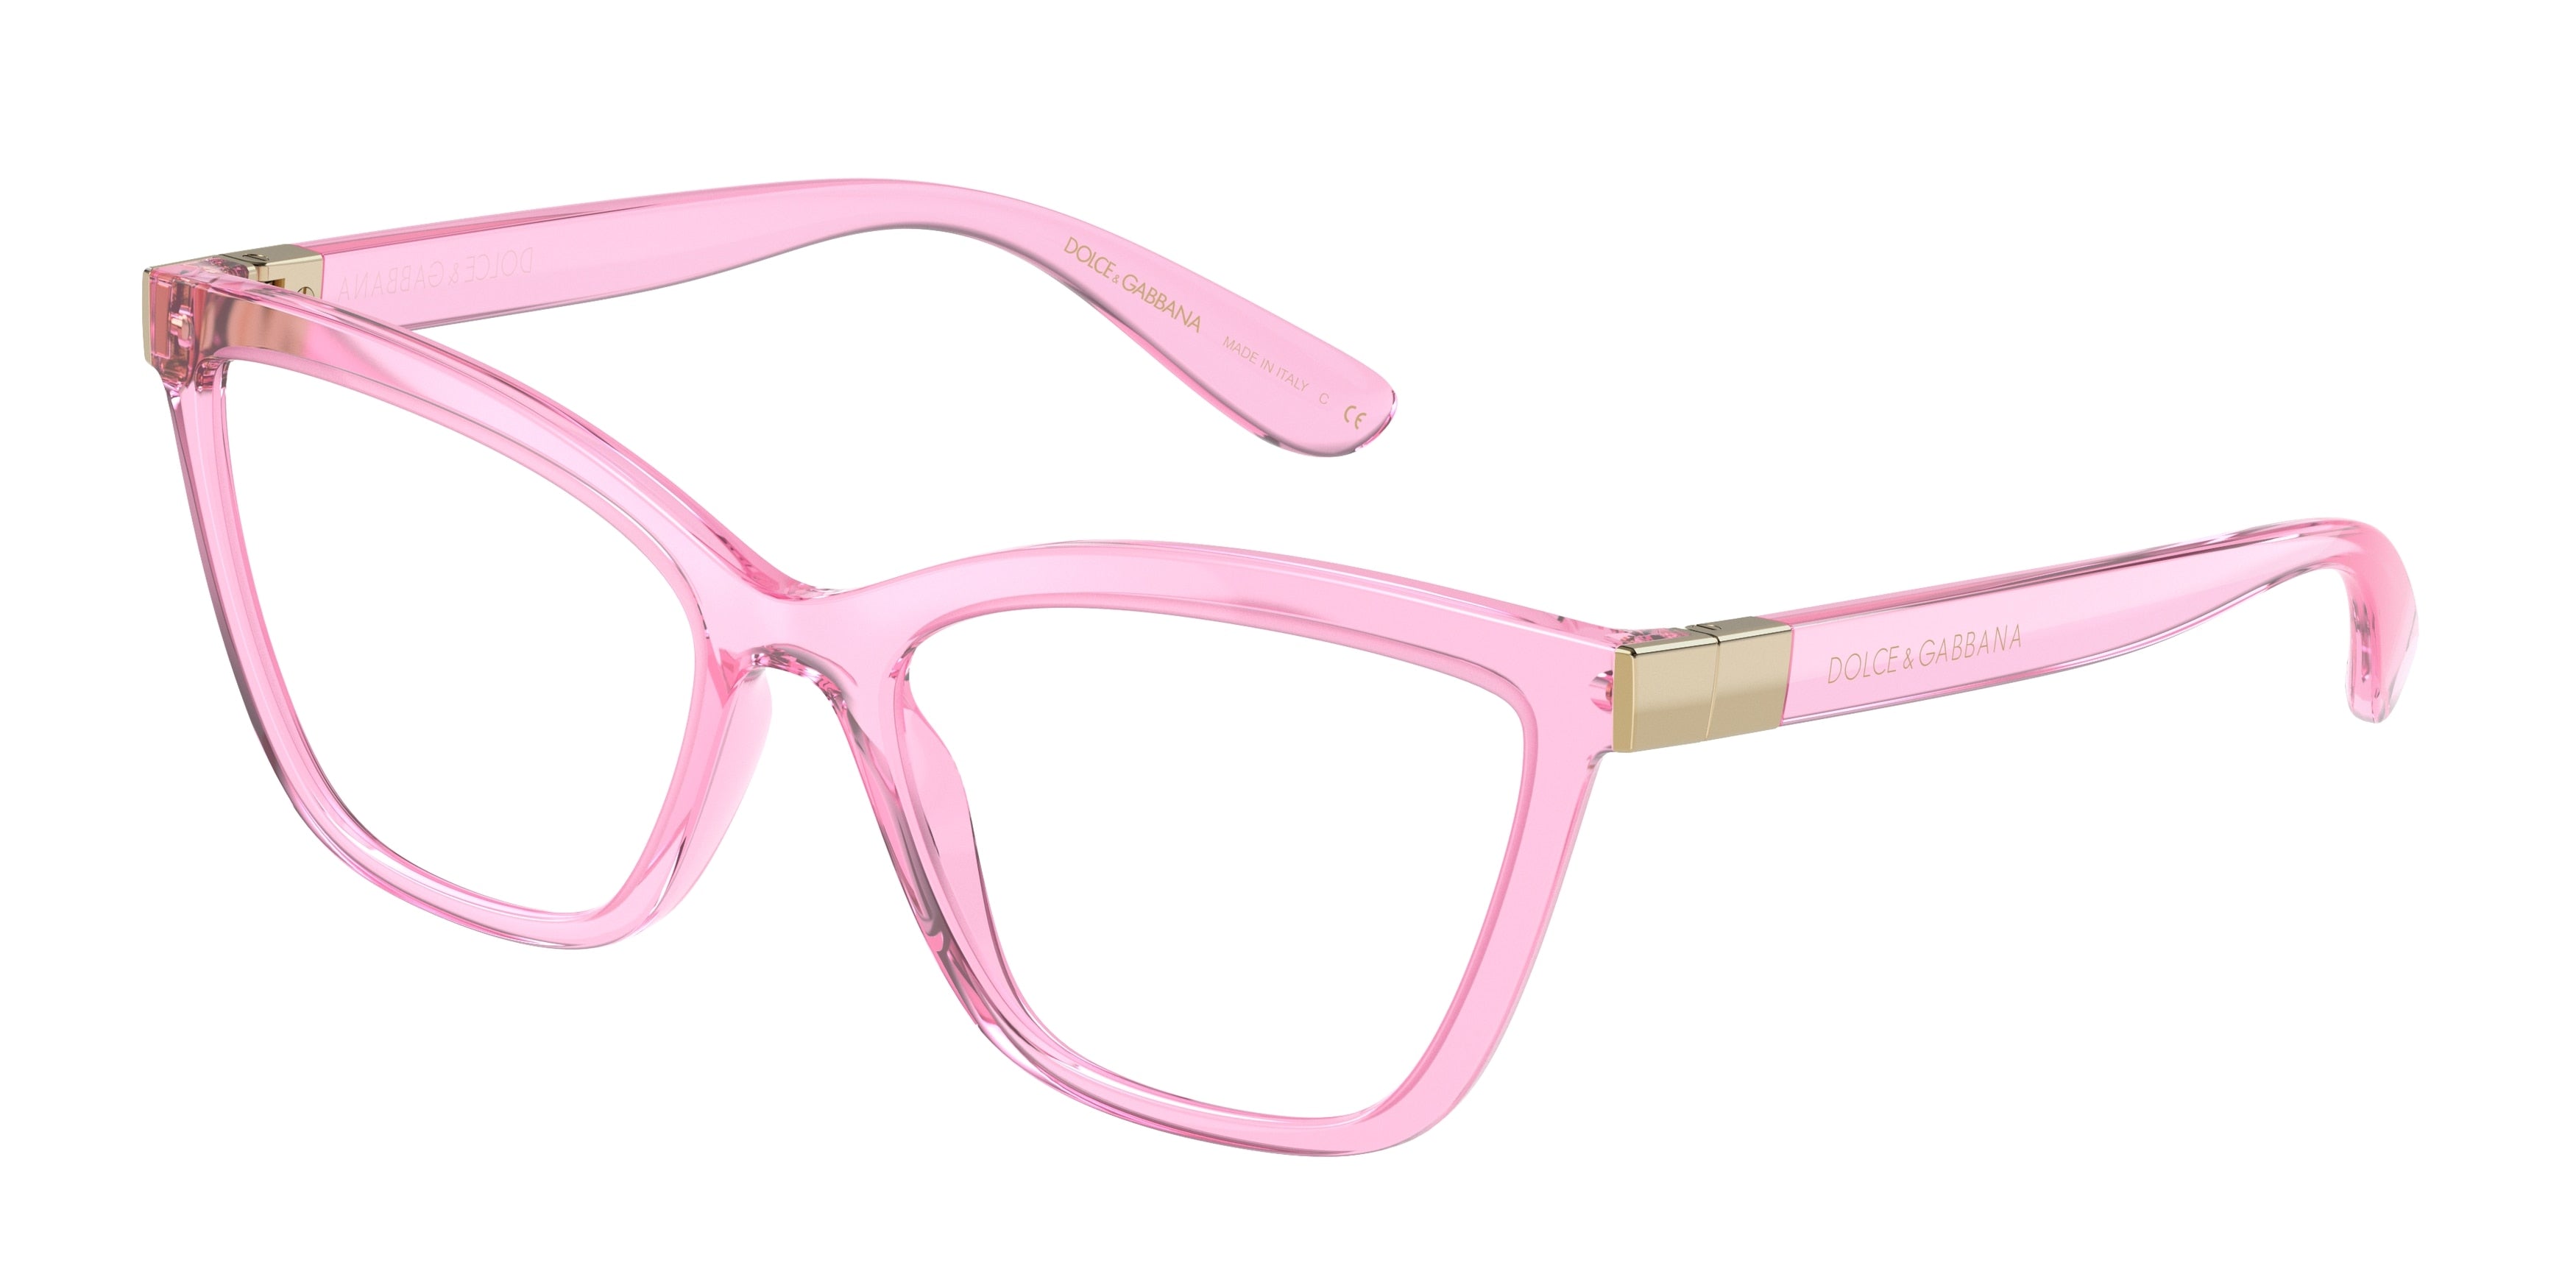 DOLCE & GABBANA DG5076 Cat Eye Eyeglasses  3097-Transparent Pink 54-140-17 - Color Map Pink